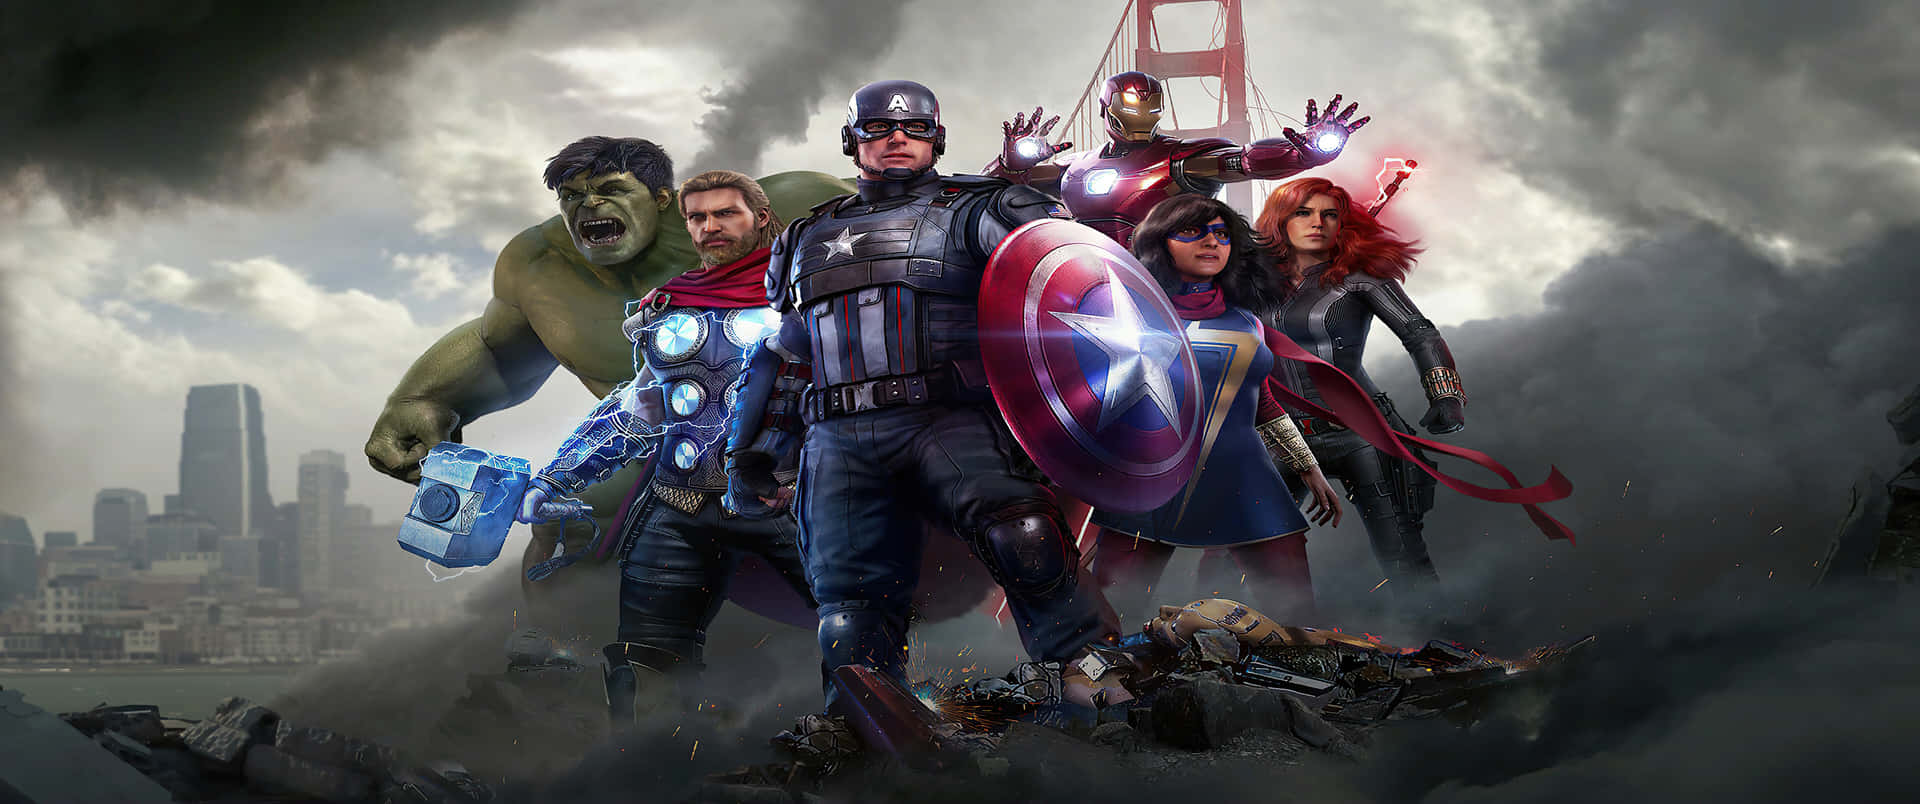 Avengers Avengers Avengers Avengers Avengers Avengers A Wallpaper